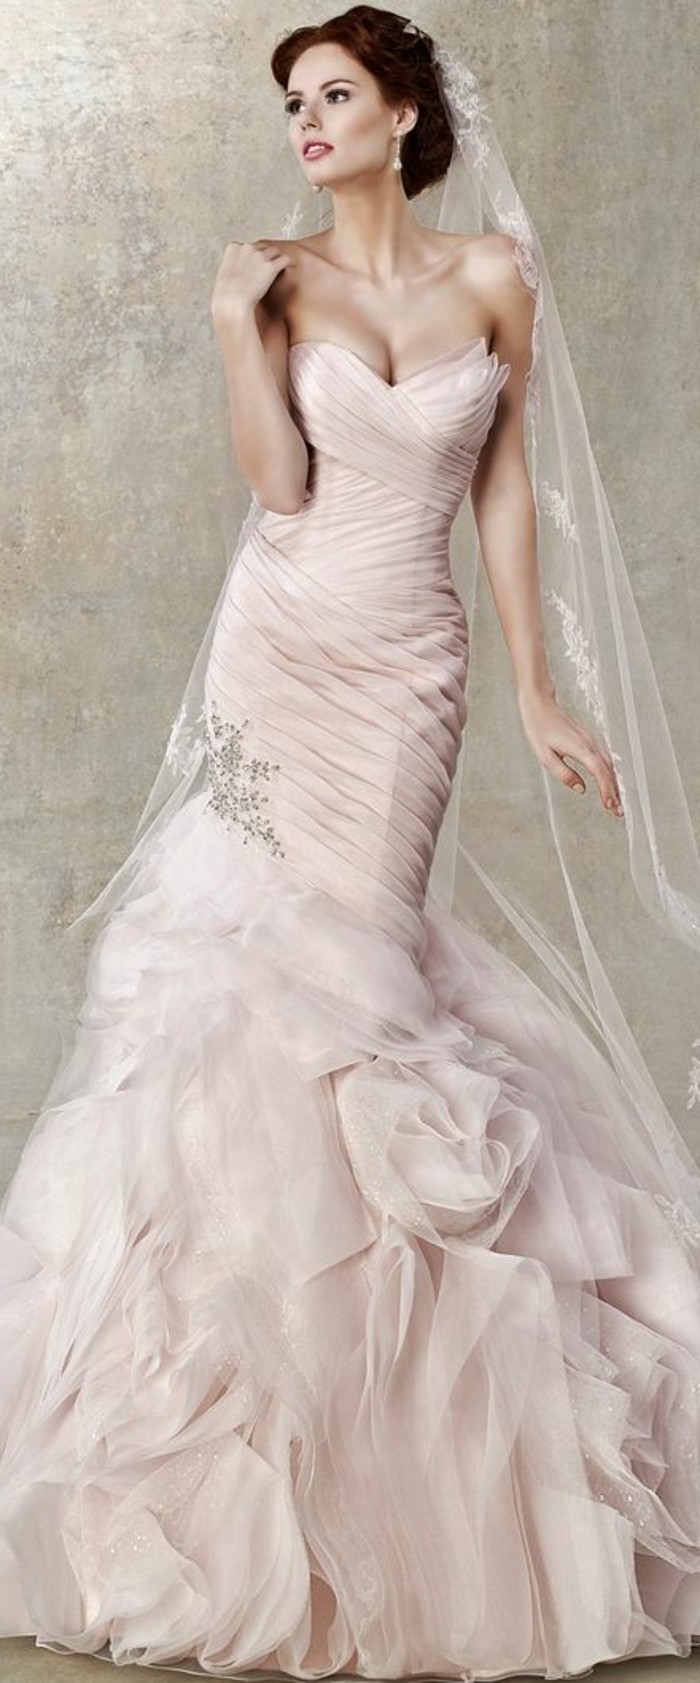 Vjenčana haljina u ružičastom i dugom velu